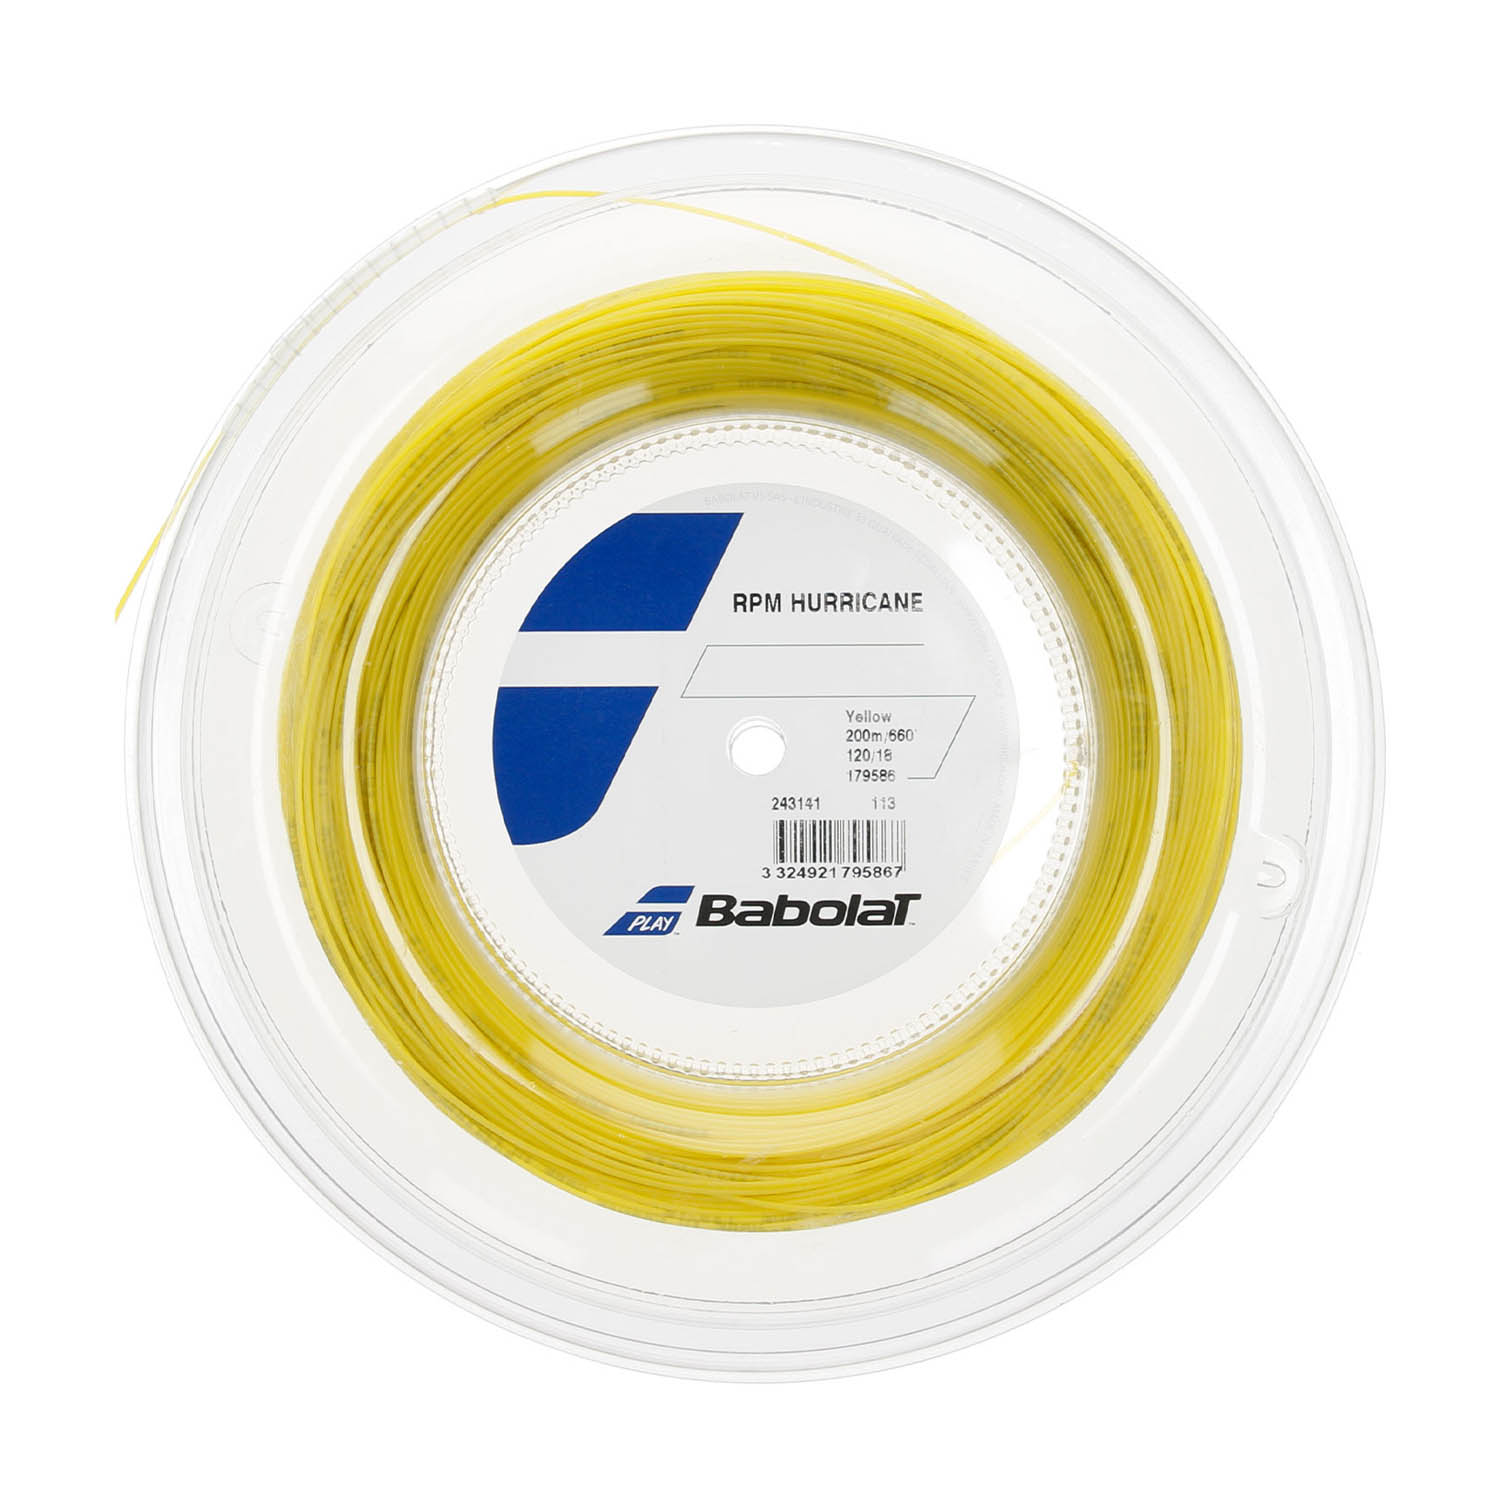 Babolat RPM Hurricane 1.20 Matassa 200 m - Yellow